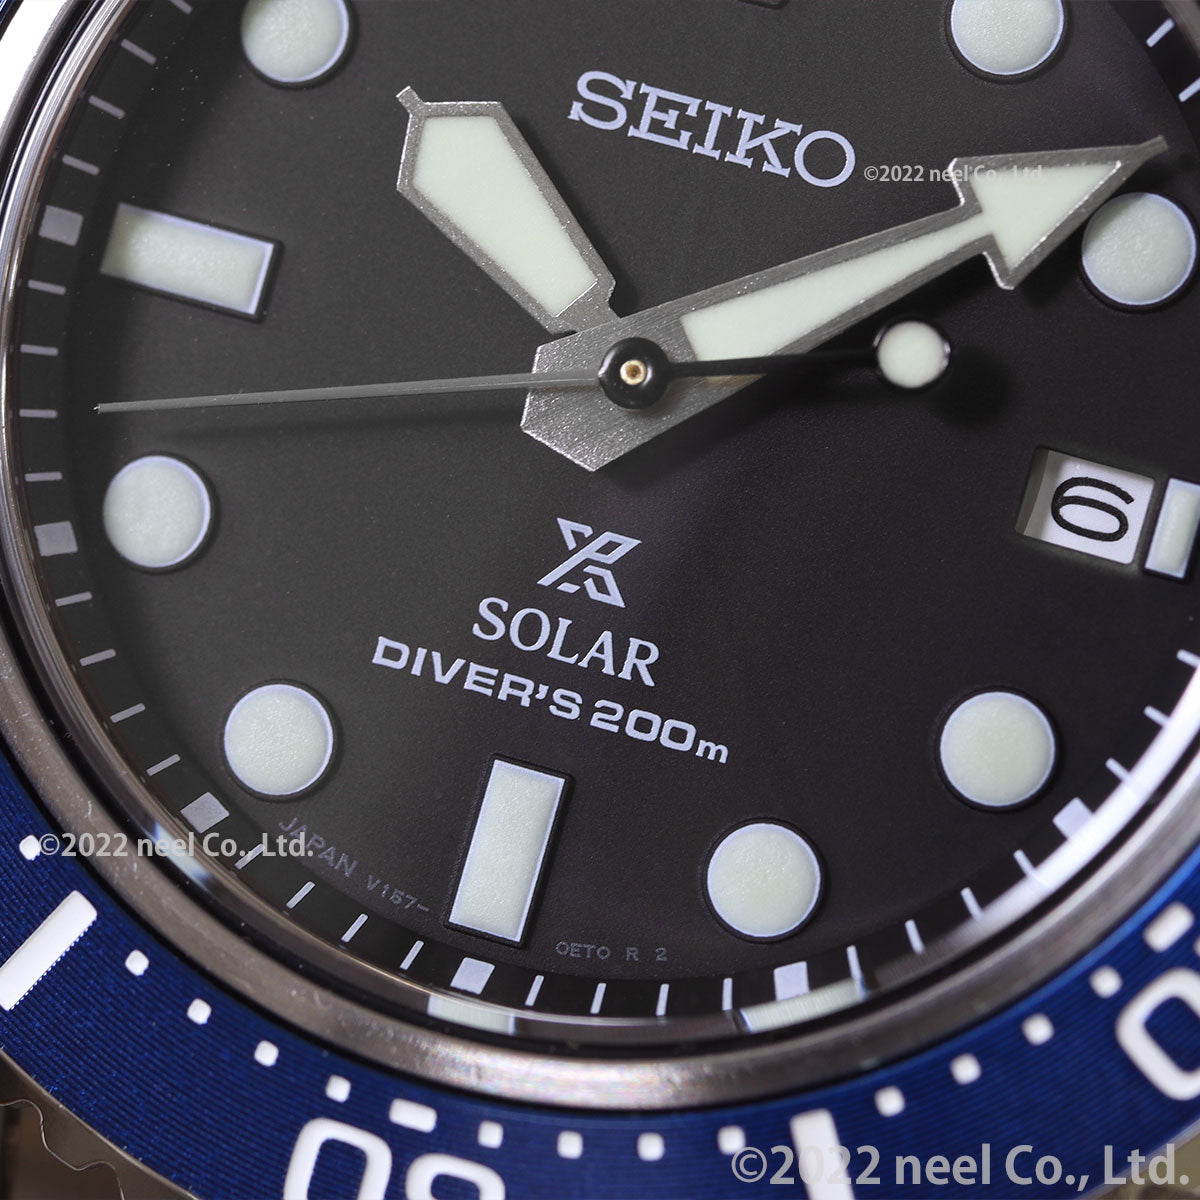 セイコー プロスペックス SEIKO PROSPEX ダイバースキューバ ソーラー 腕時計 メンズ SBDJ053